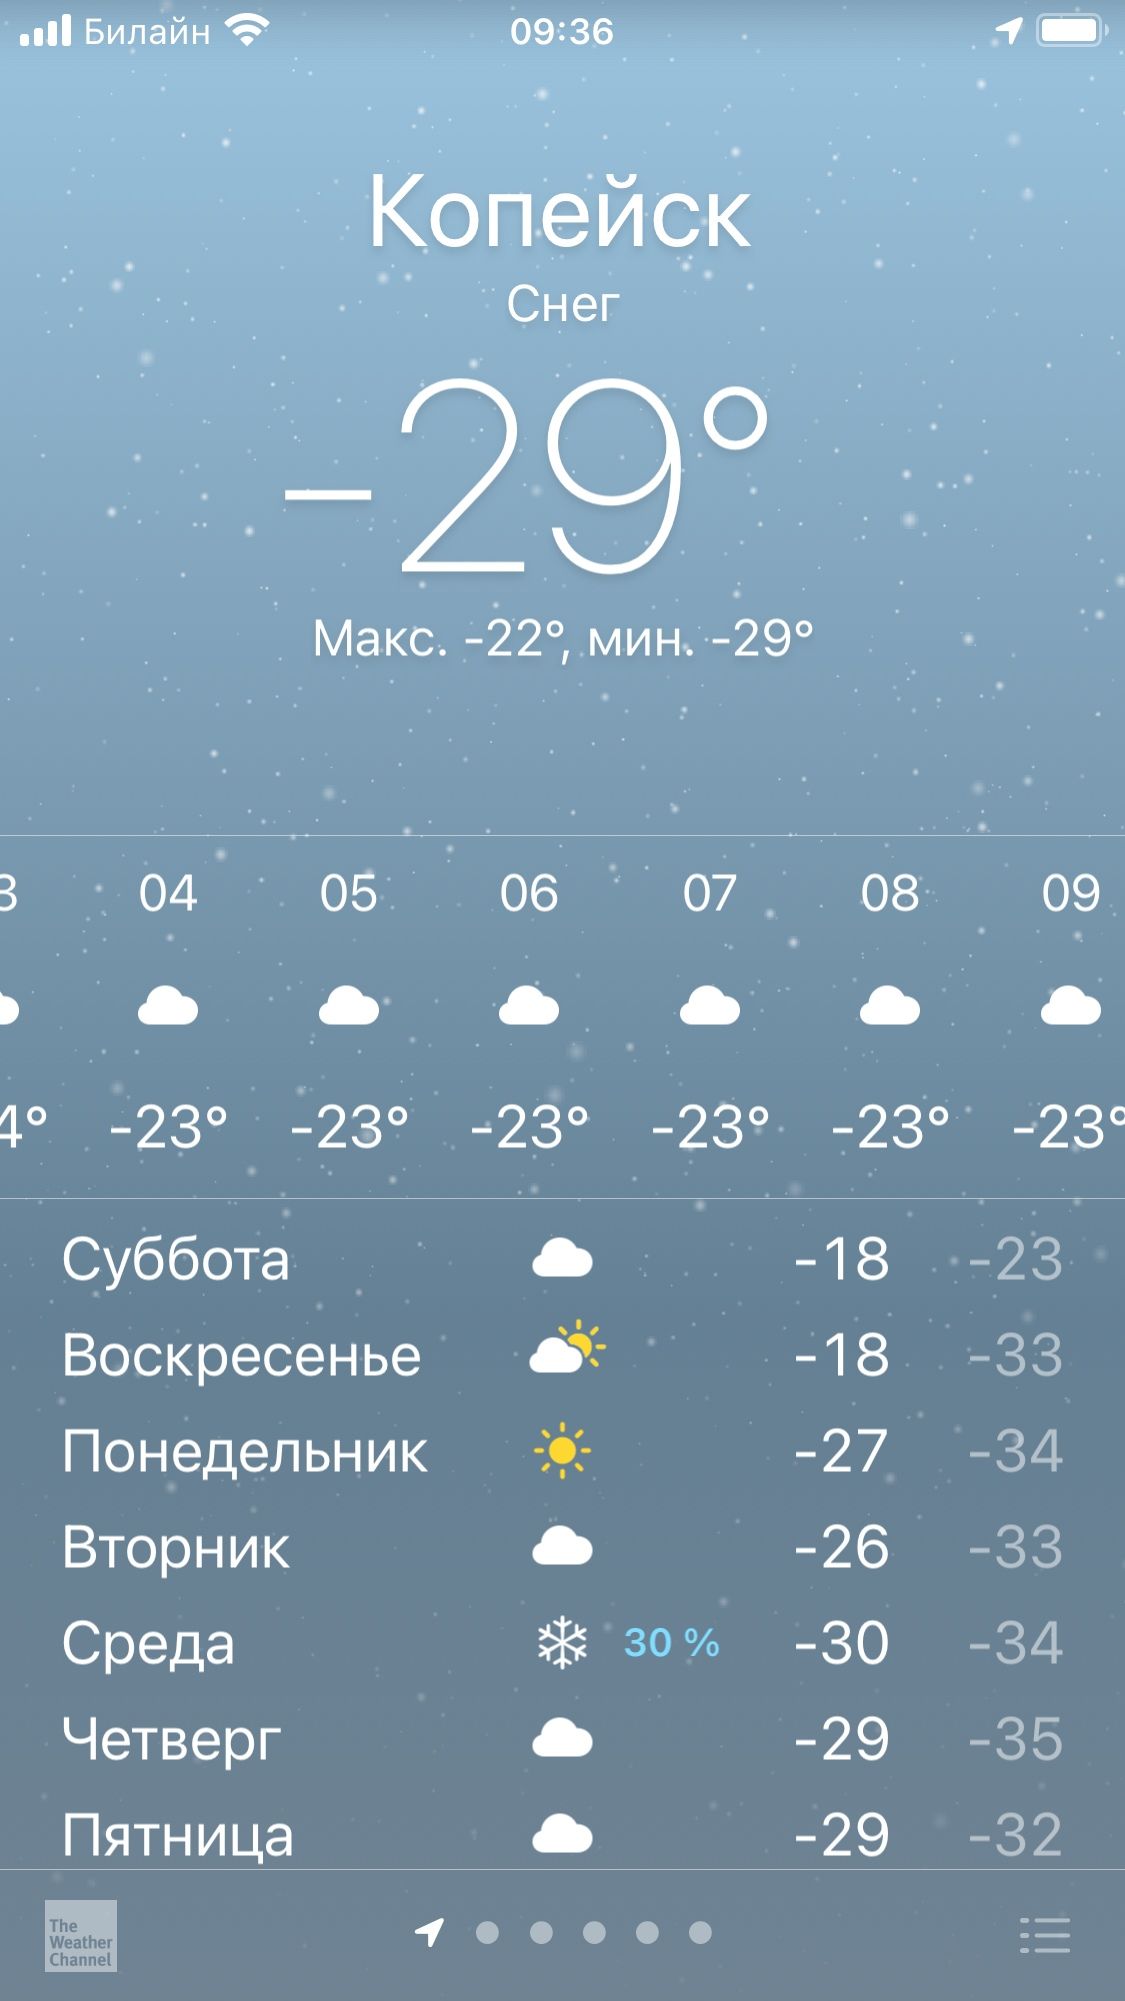 Сейчас в Копейске -29 градусов, синоптики обещают снегопад